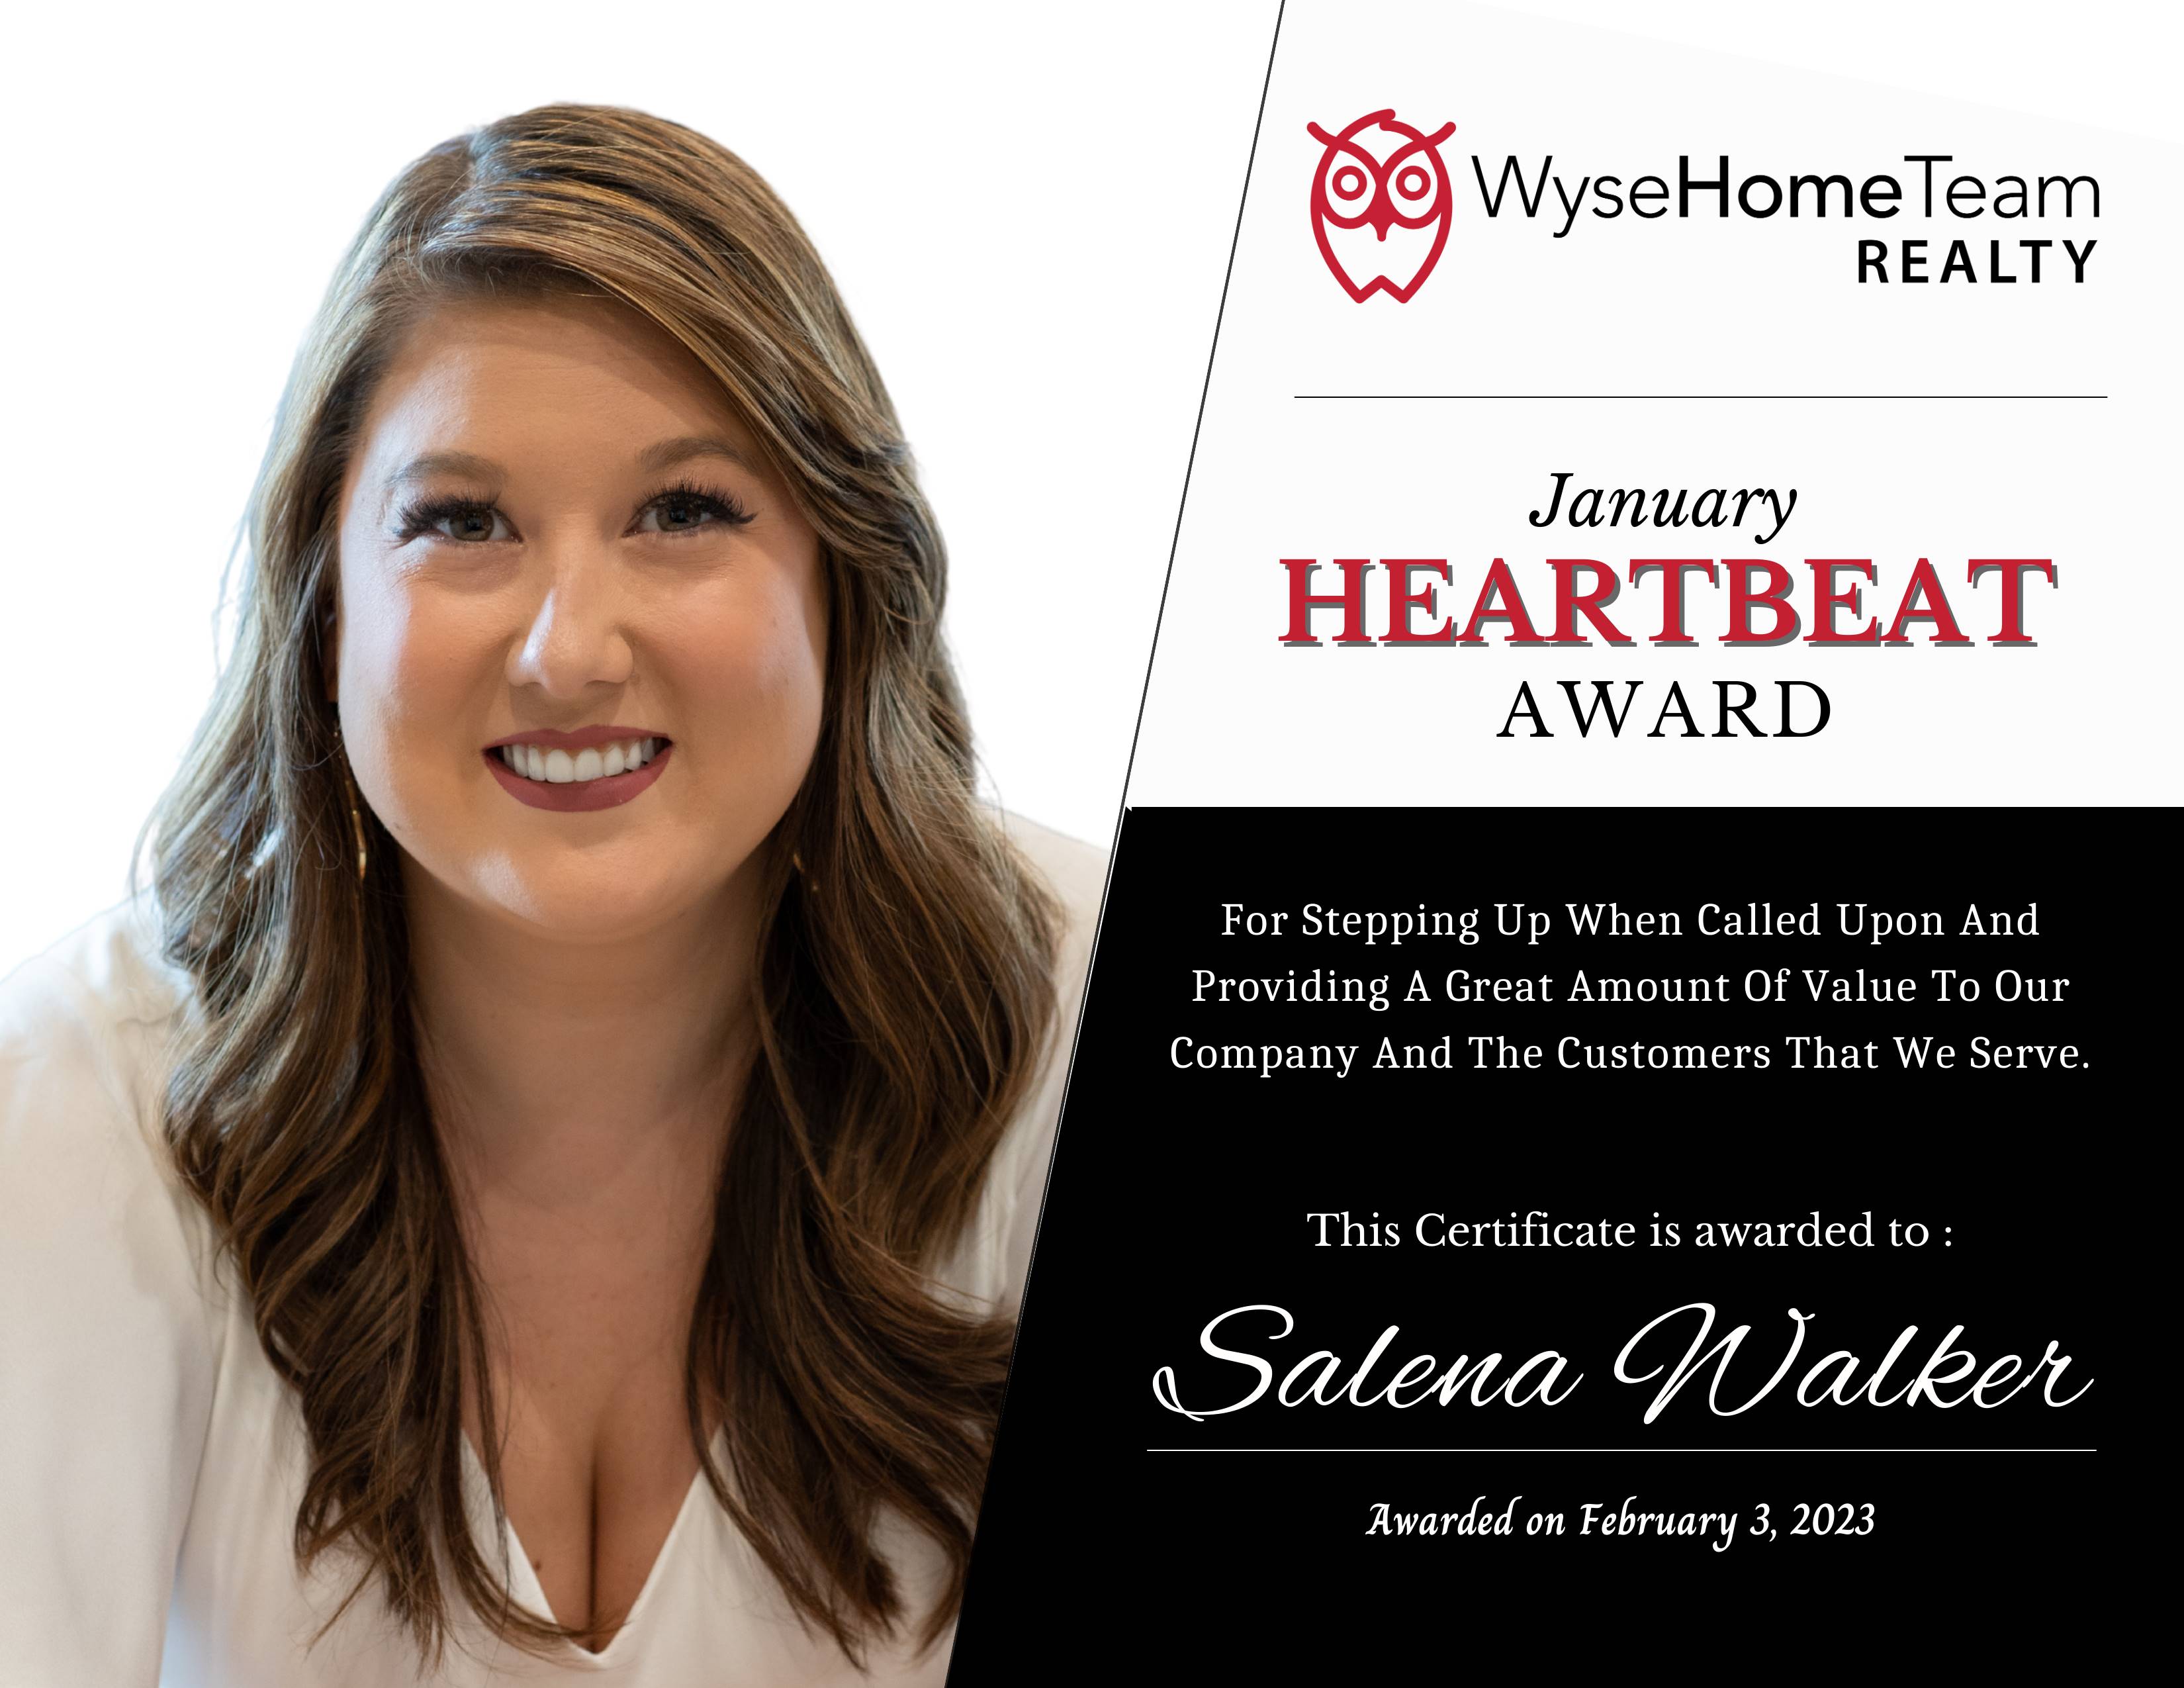 Salena Walker winner of the January 2023 Heartbeat Award